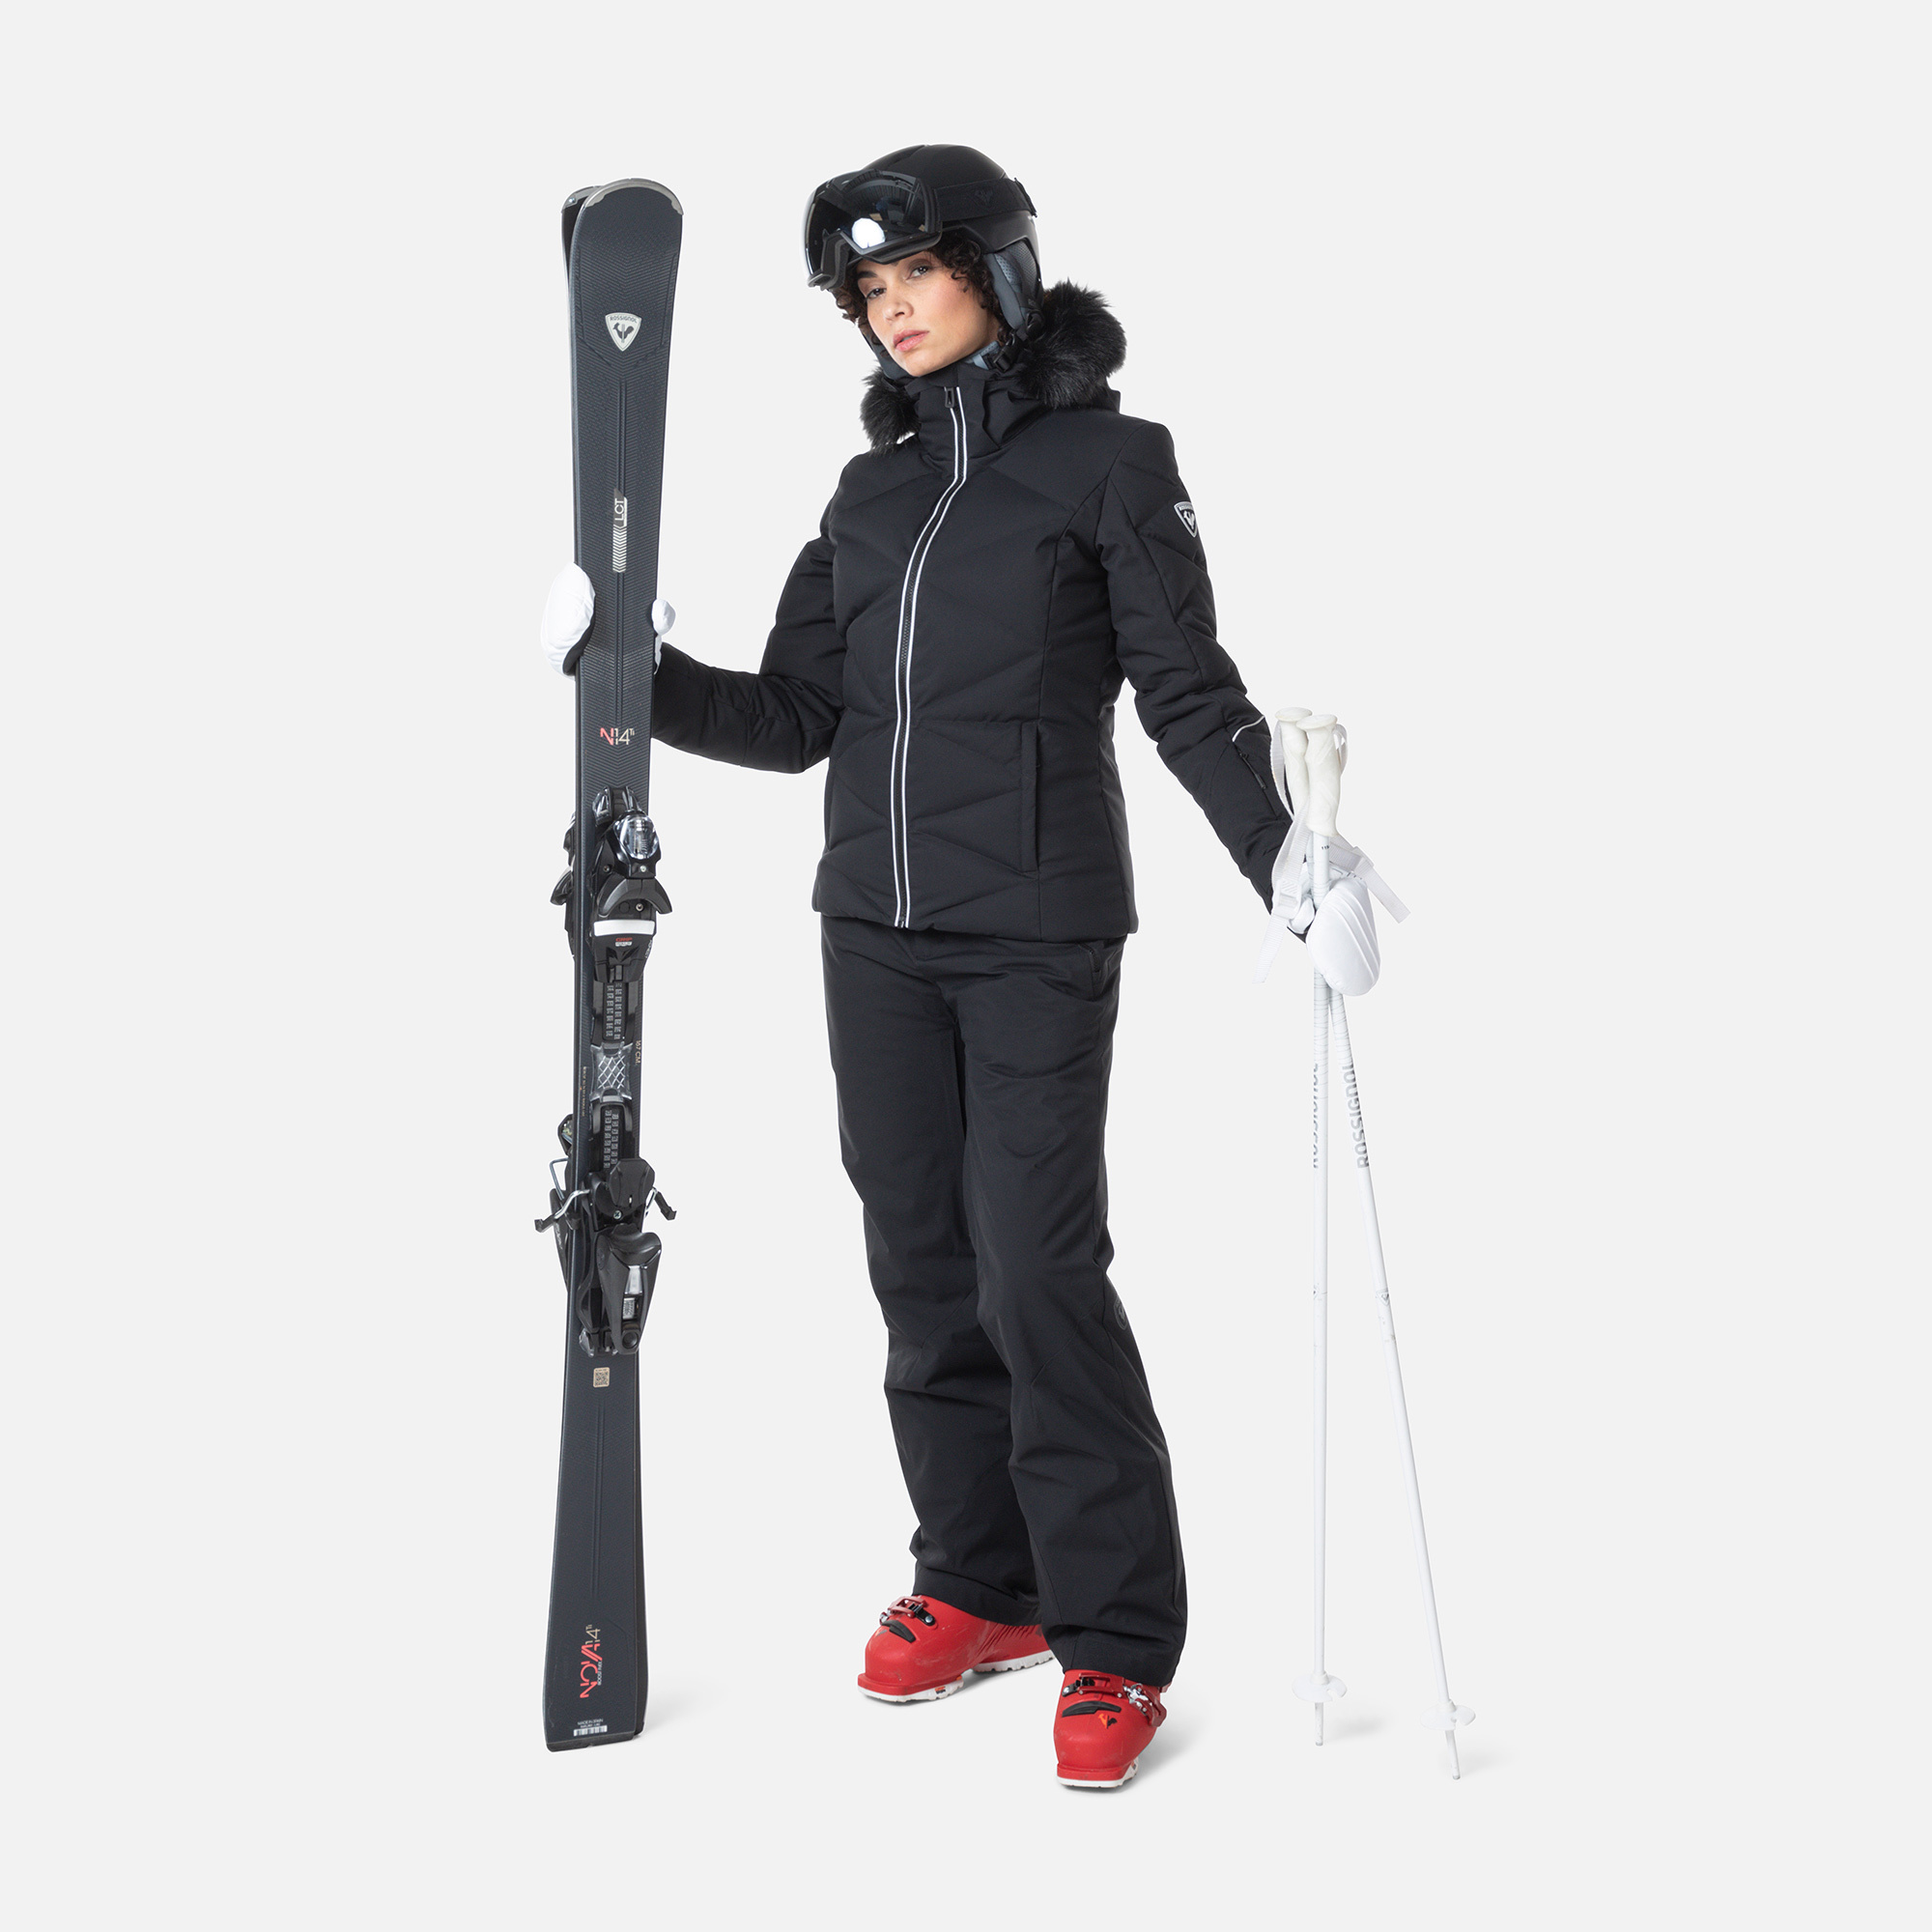 ROSSIGNOL pas cher homme/femme : Ski, veste et accessoires